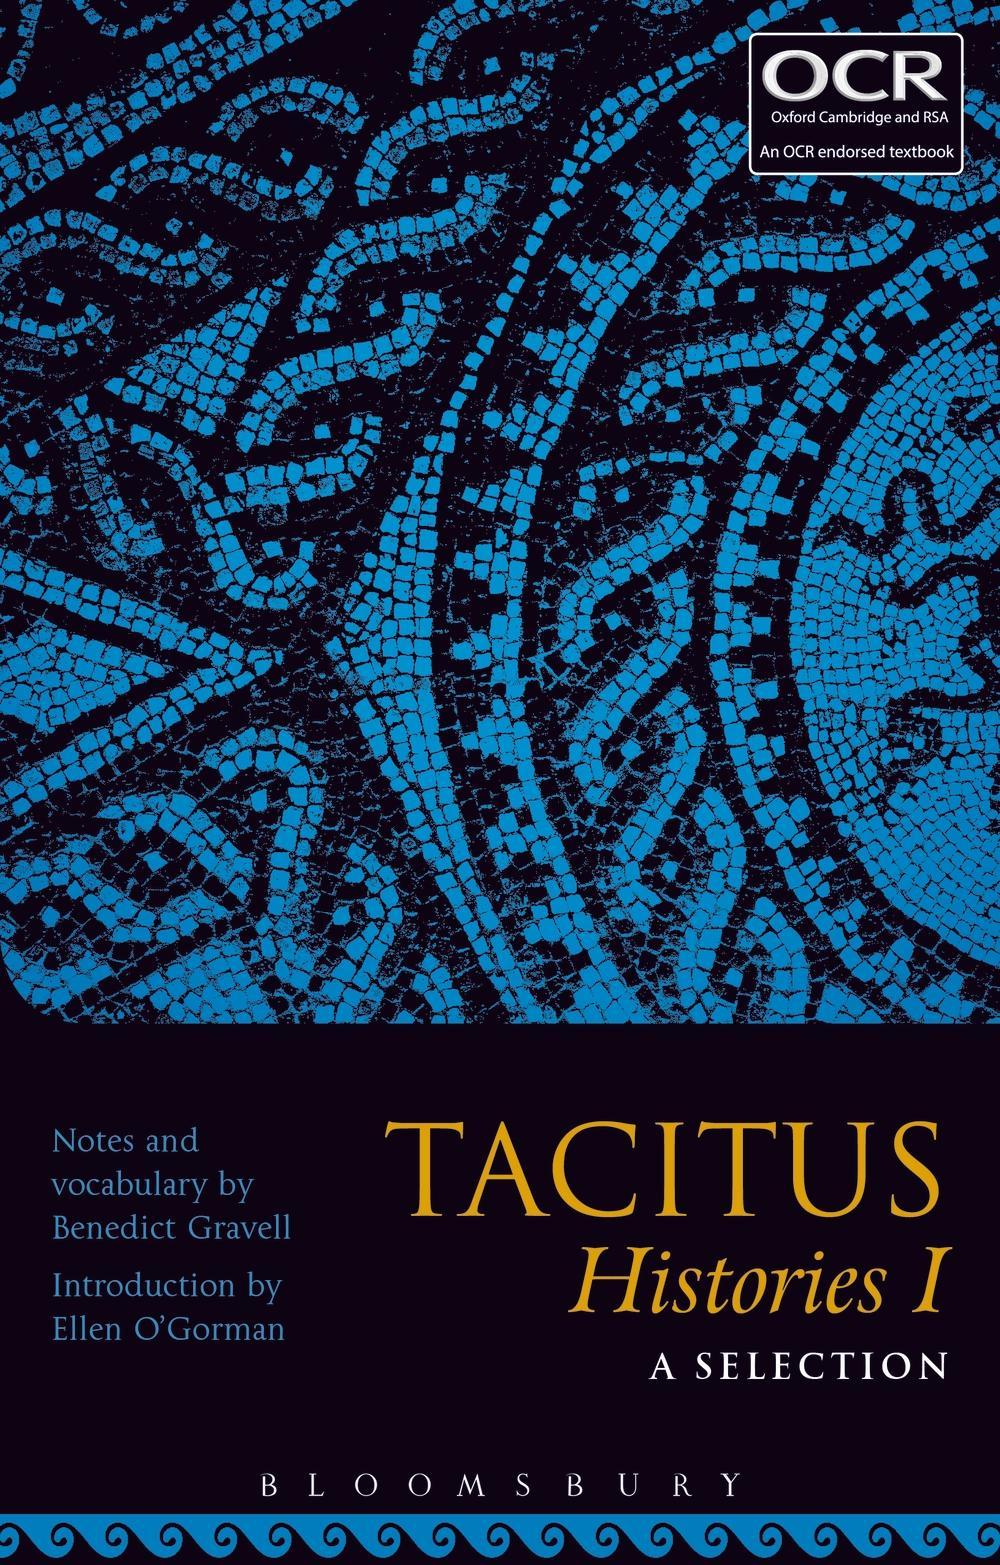 Tacitus Histories I: A Selection